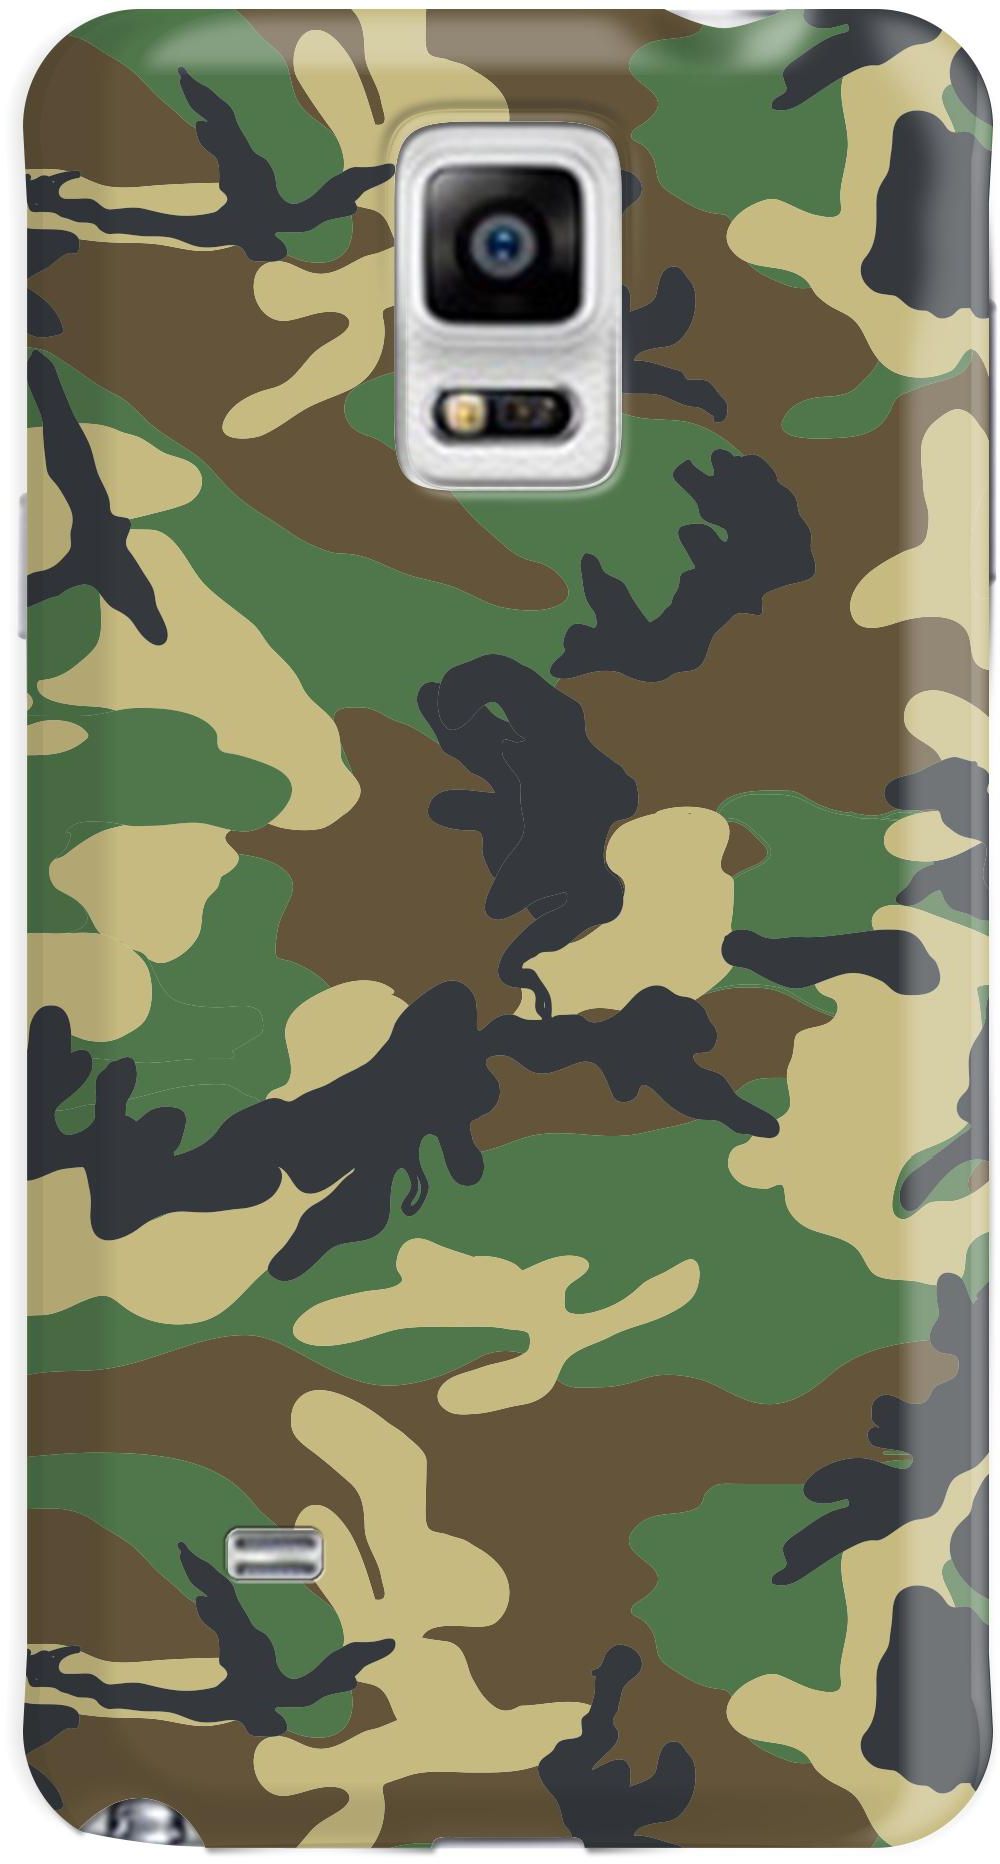 Stylizedd Samsung Galaxy Note 4 Premium Slim Snap case cover Gloss Finish - Jungle Camo